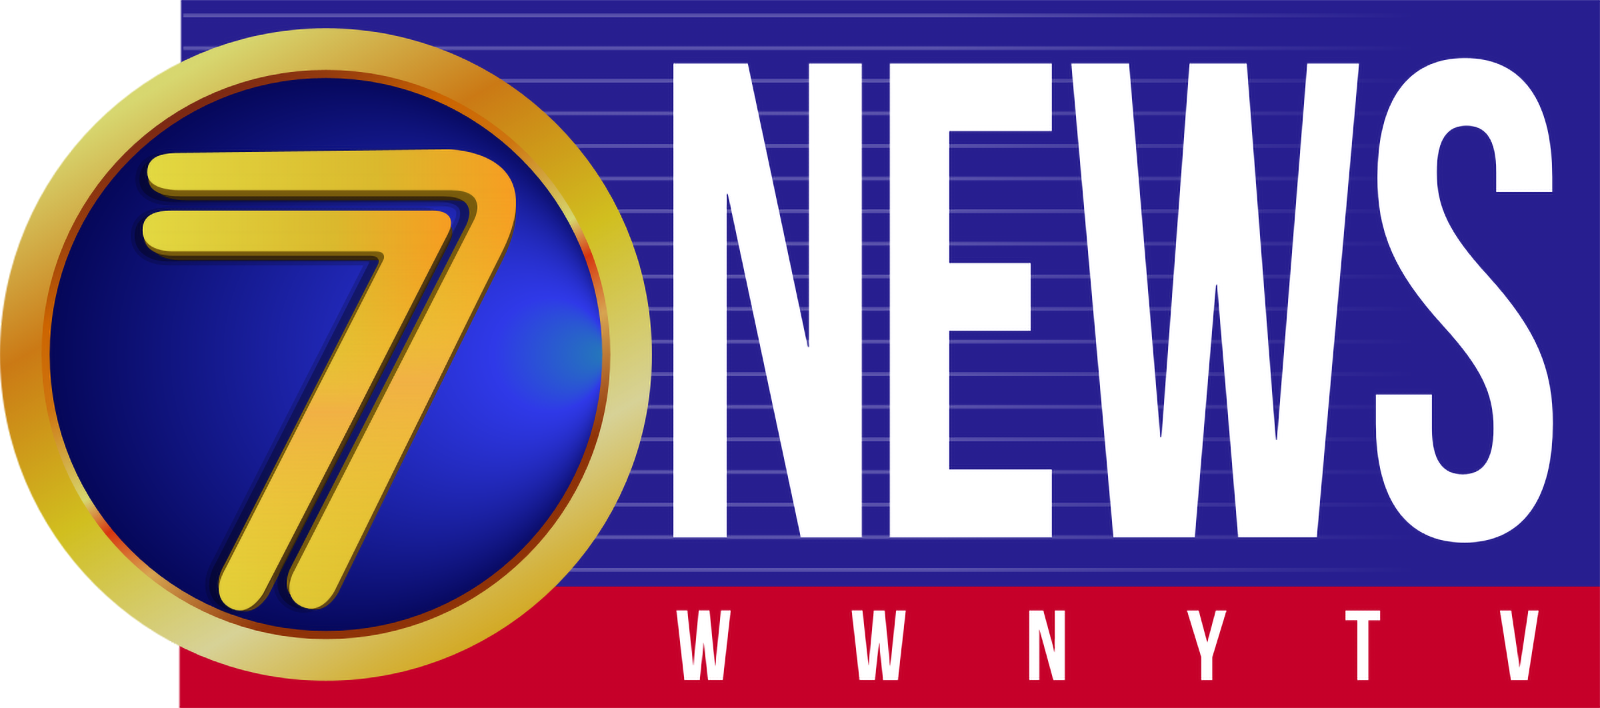 WWNY TV 7 News logo